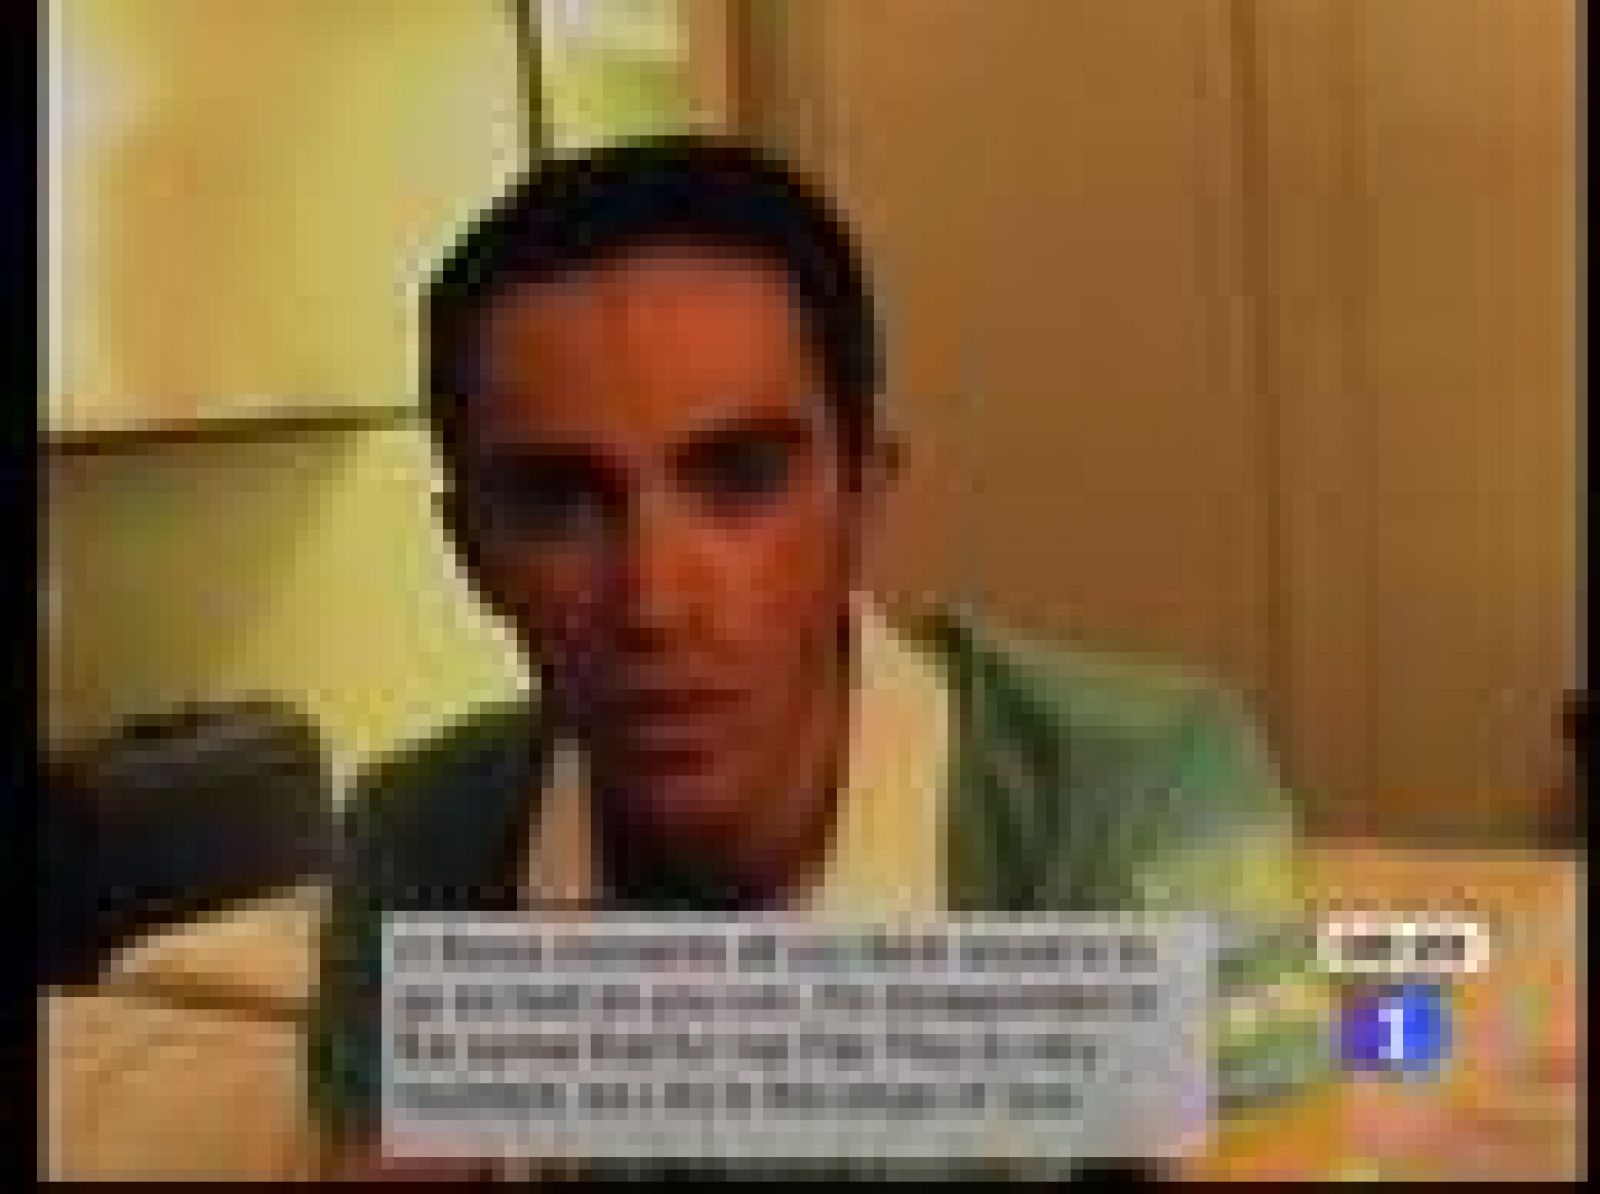 El ciclista madrileño Alberto Contador ha grabado un video en la habitación de su hotel en el que pide perdón al luxemburgués Andy Schleck. El madrileño atacó aprovechando que a su rival se le salió la cadena de su bicicleta lo que permitió conseguir